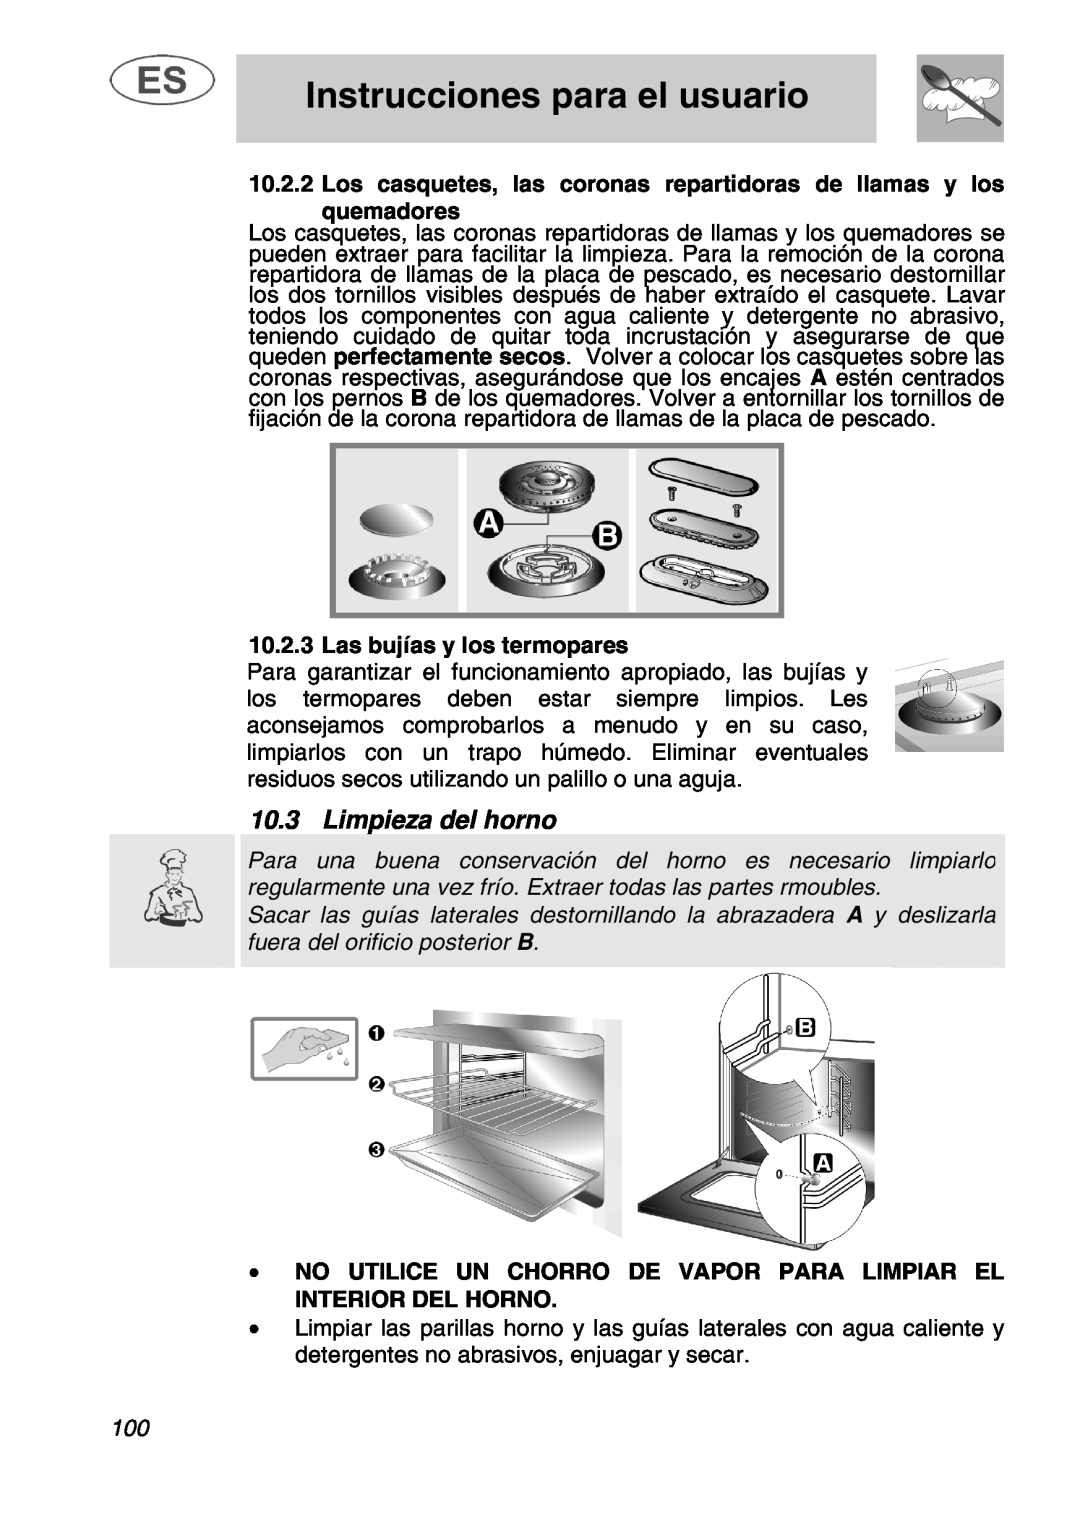 Smeg A1.1 Limpieza del horno, Las bujías y los termopares, fuera del orificio posterior B, Instrucciones para el usuario 